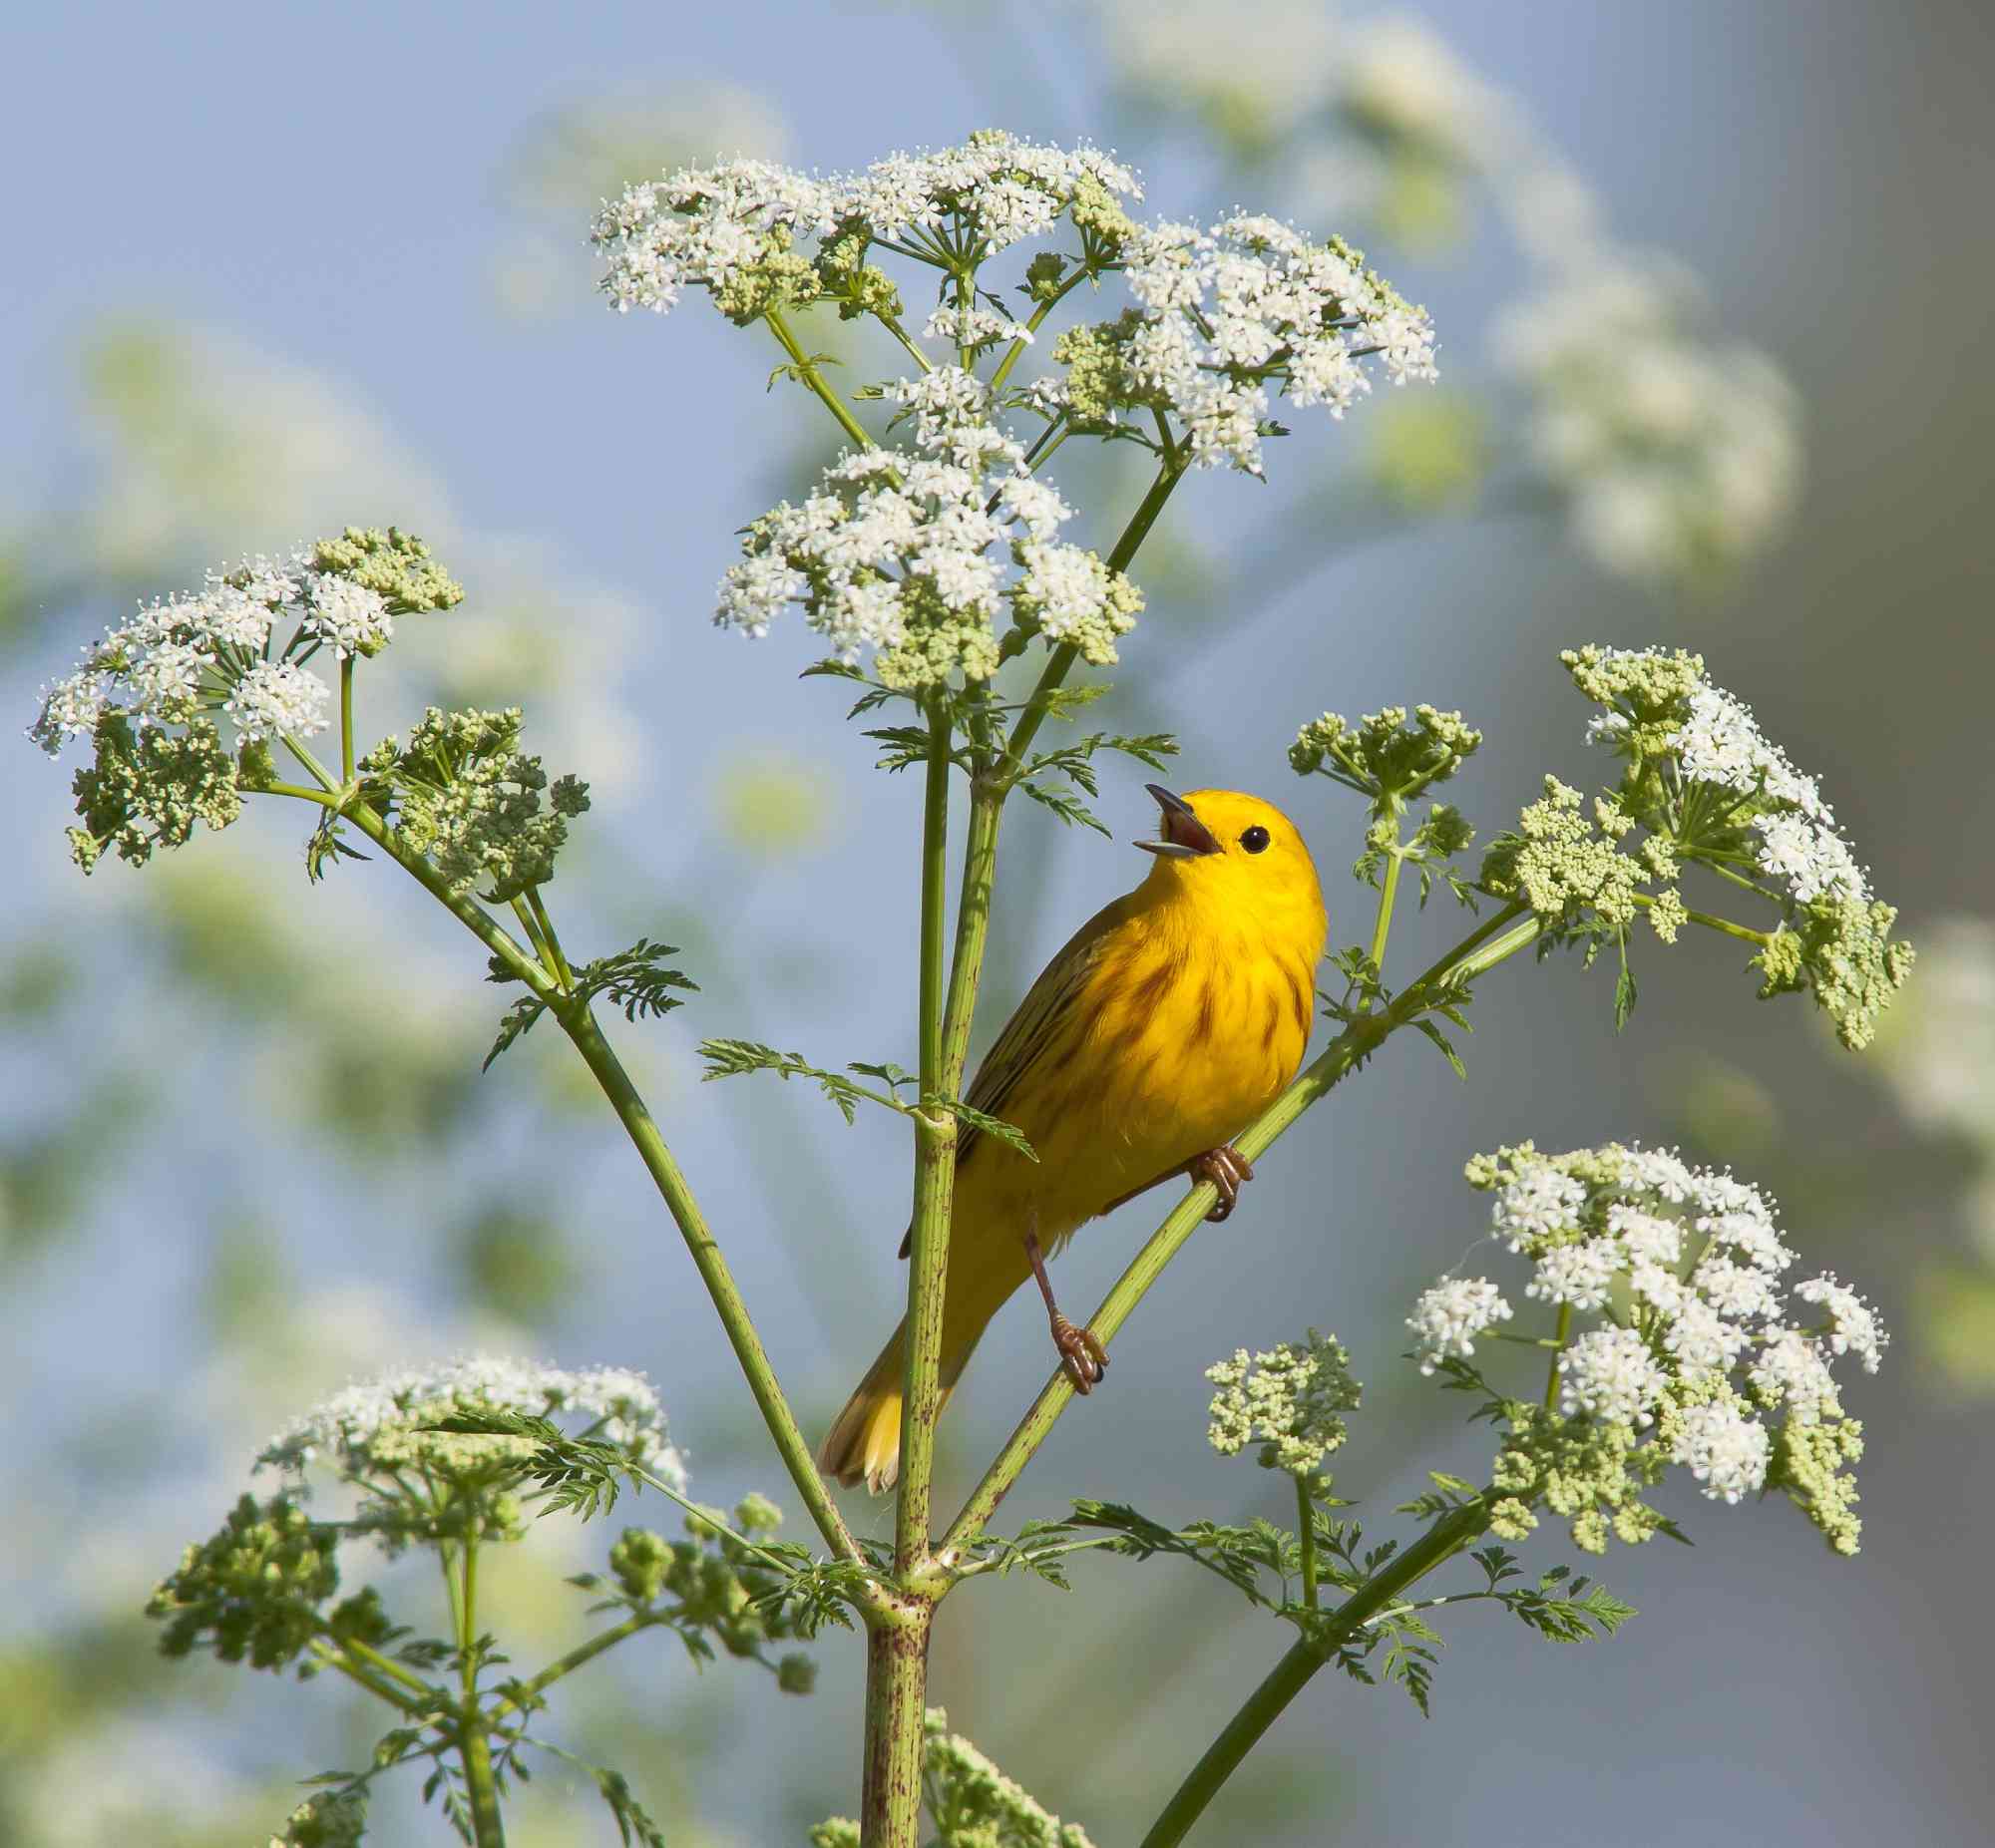 2012.08.29 - Singing Yellow Warbler - Wyoming - Diana LeVasseur